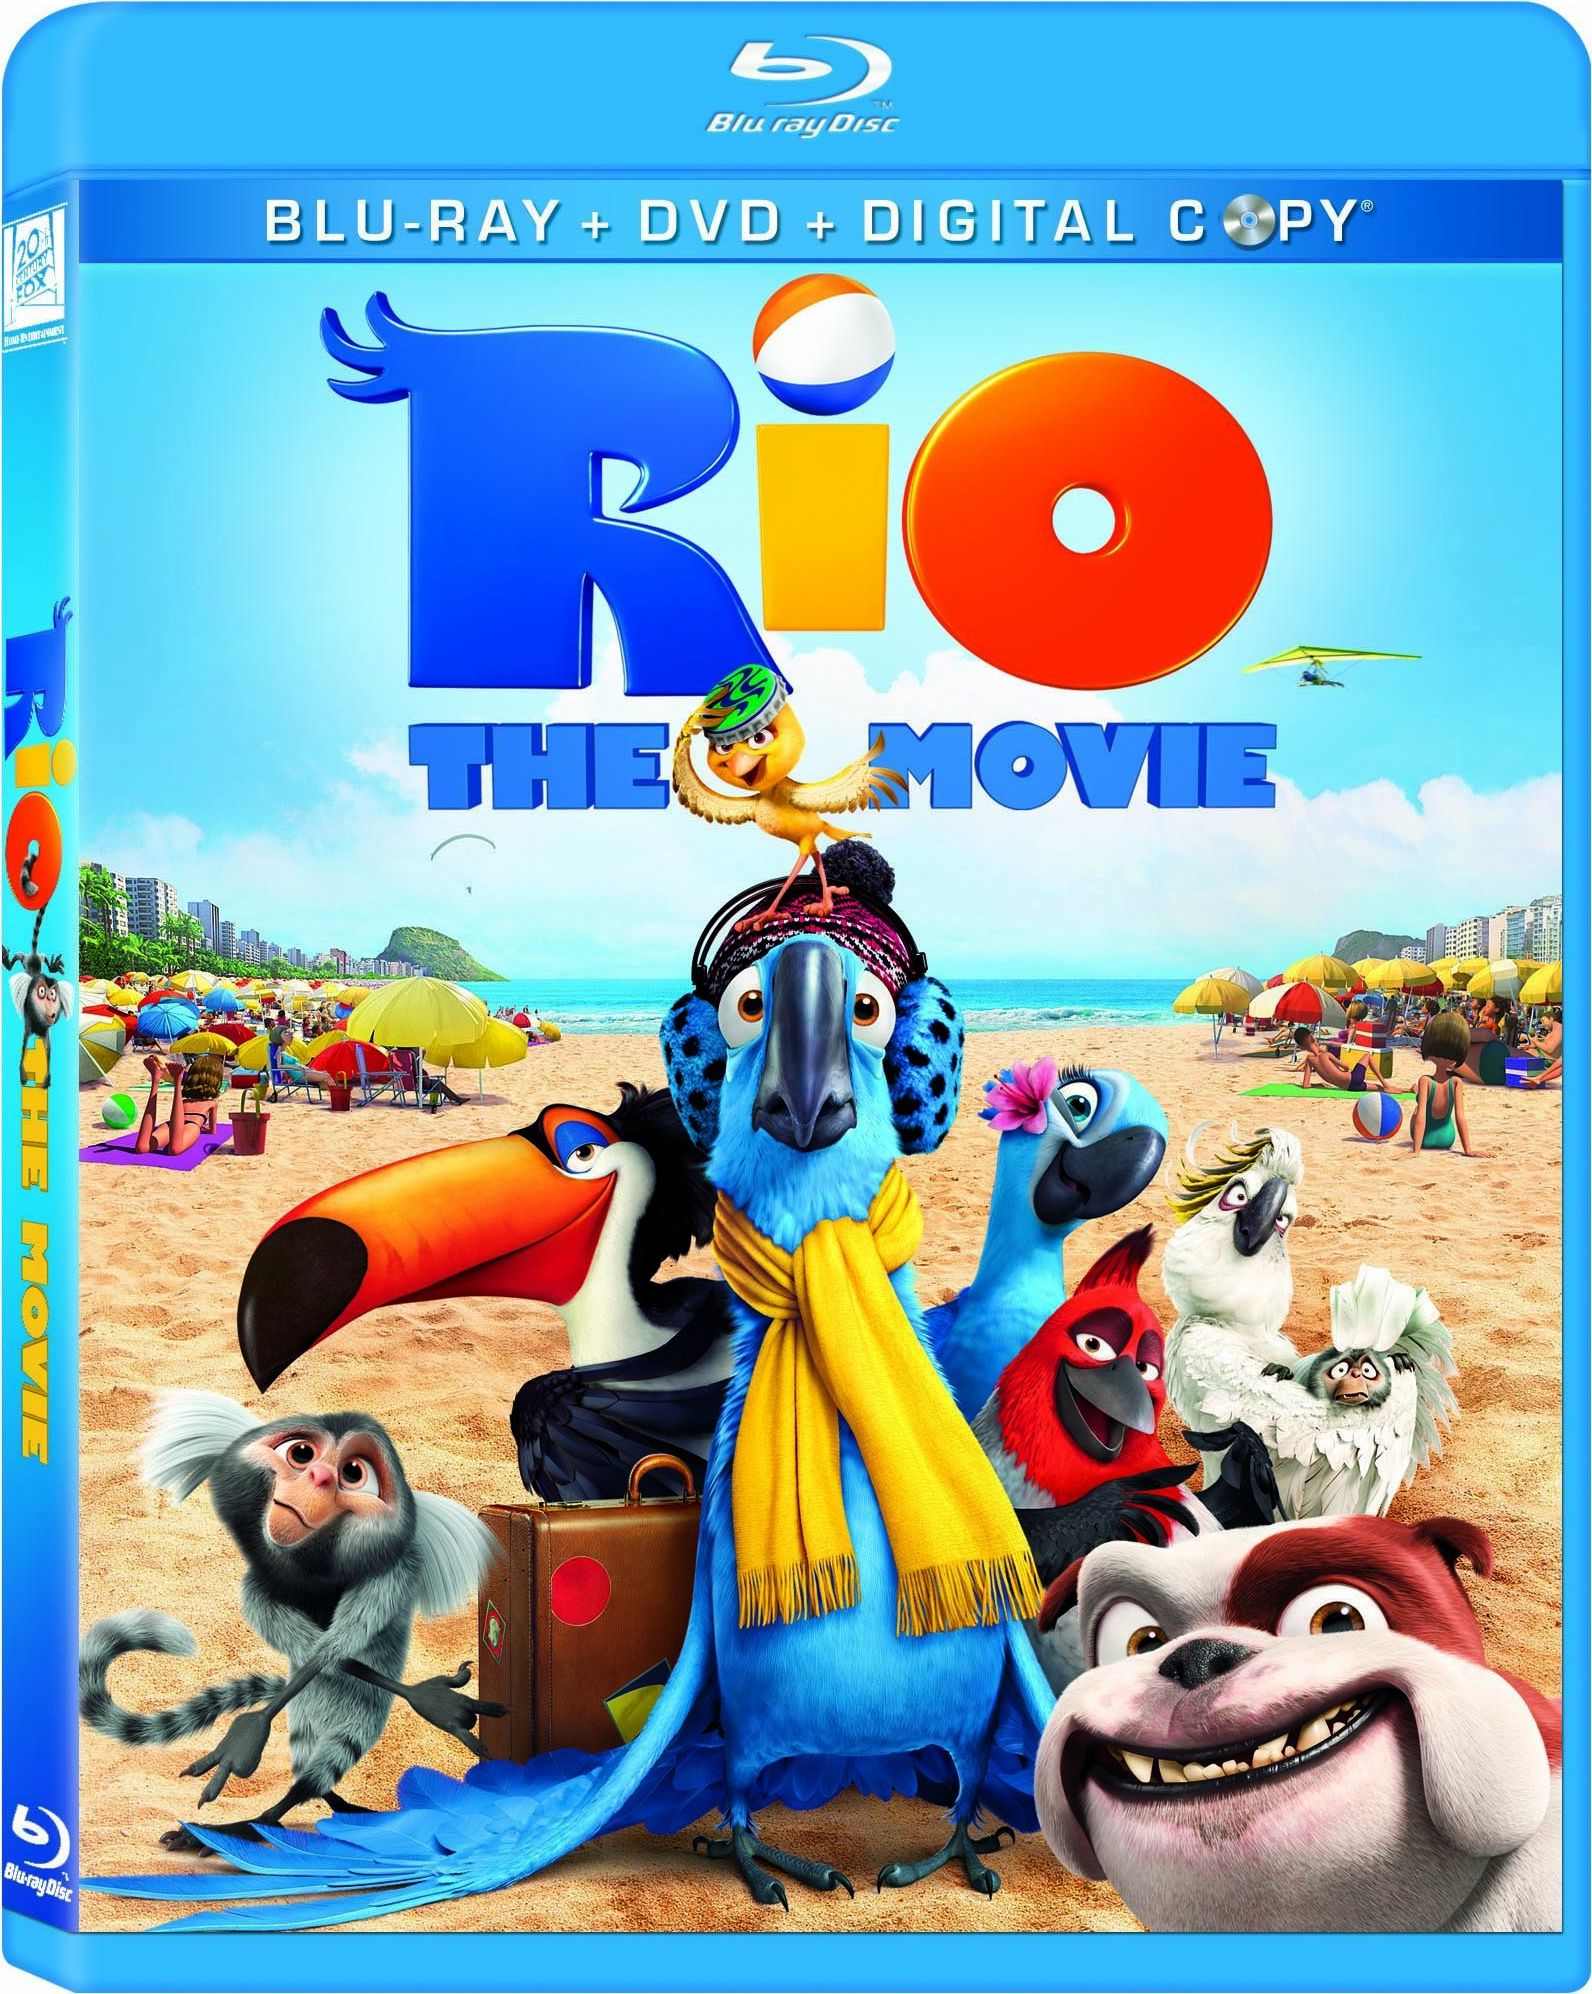 Rio Release 2, 2011